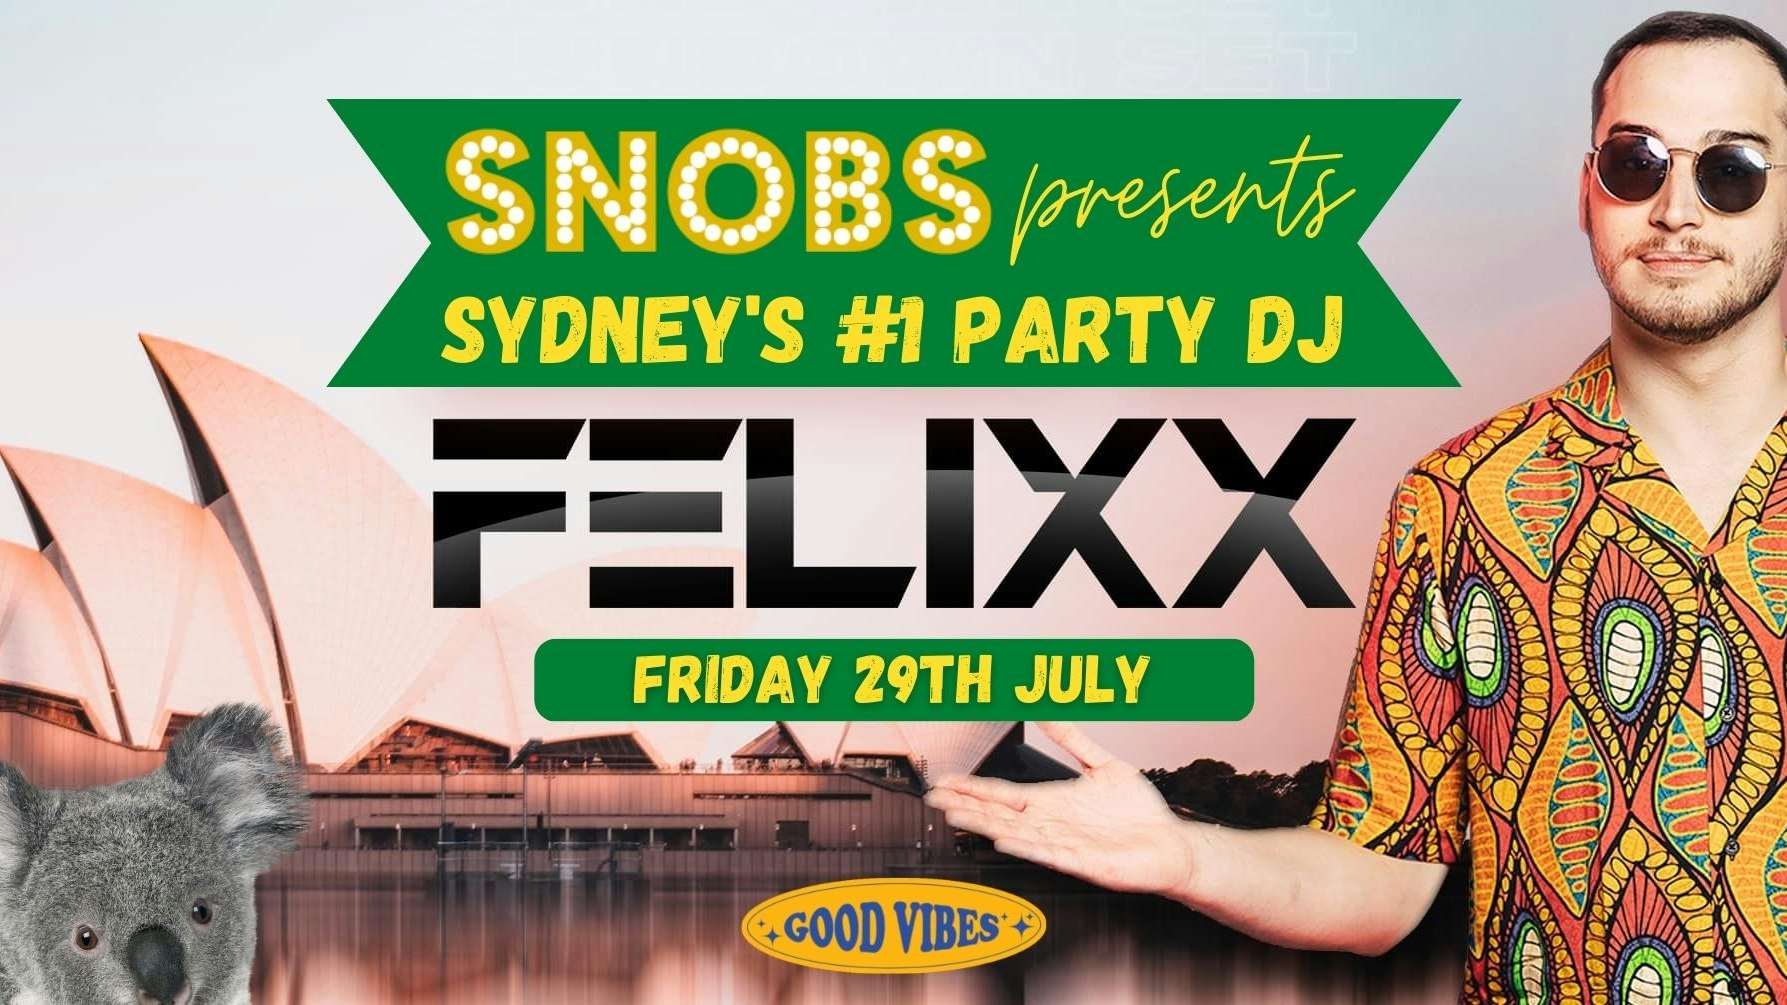 Snobs presents Felixx (Australia’s Top Party DJ)